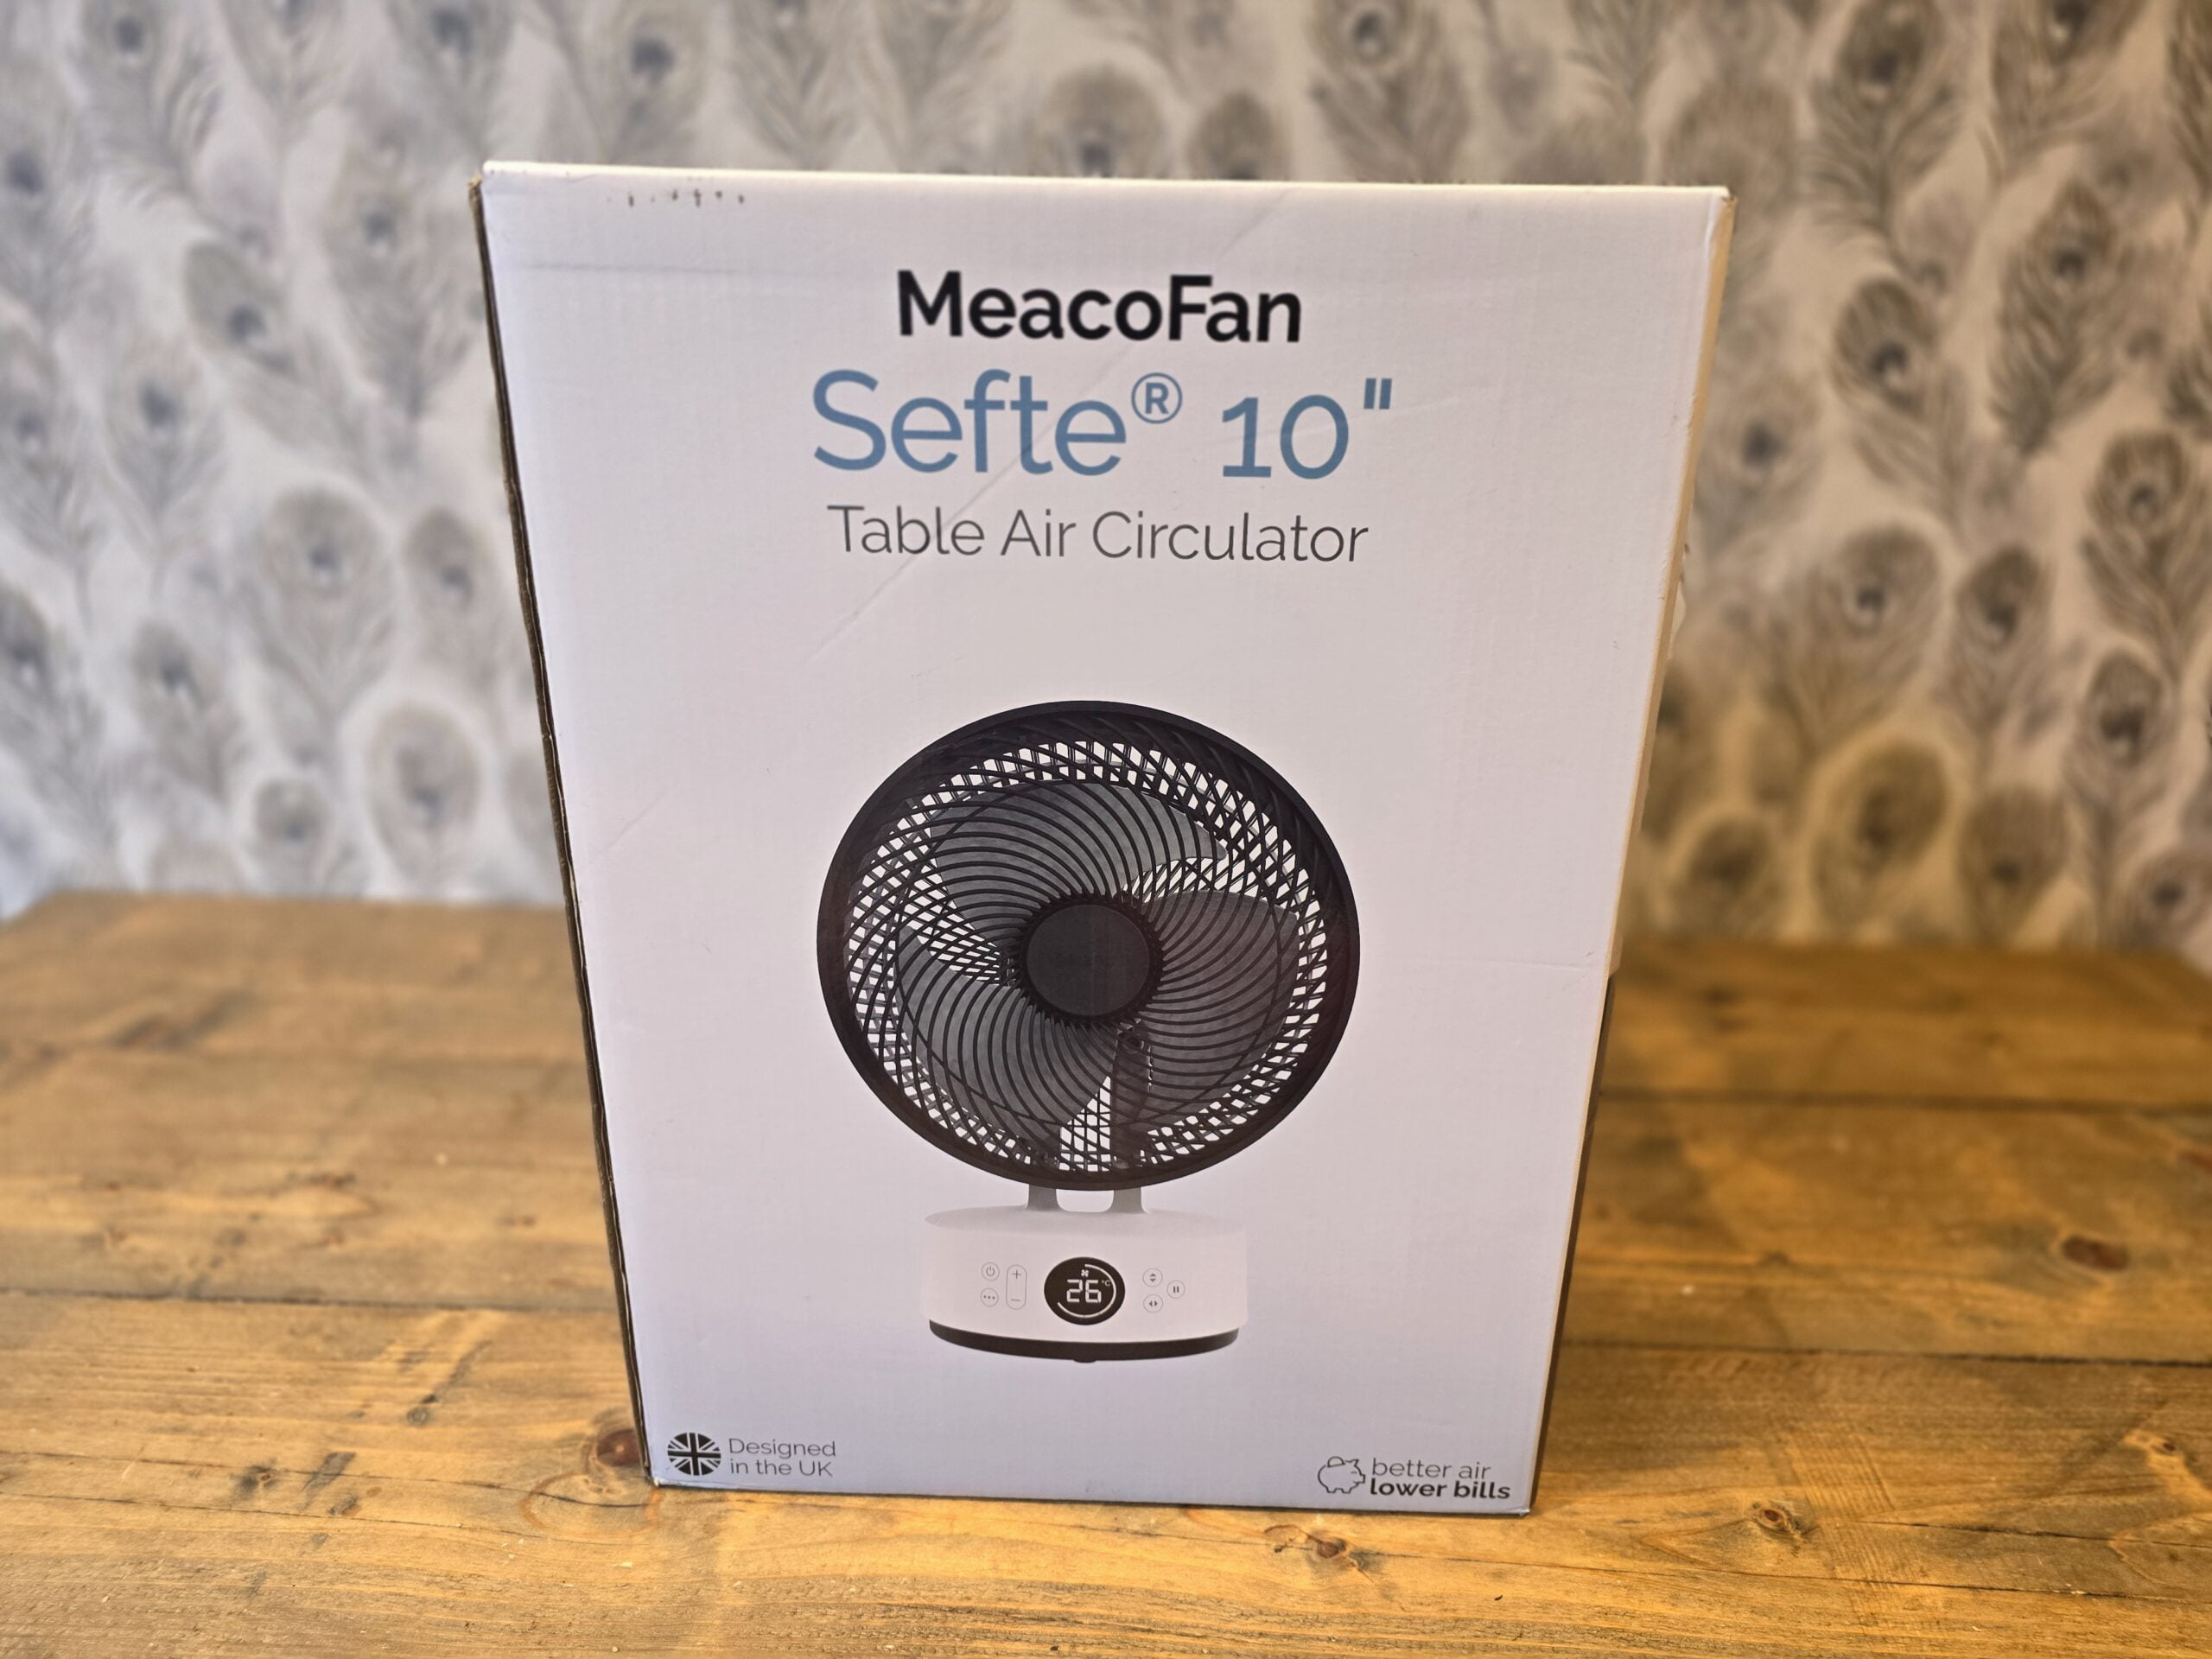 MeacoFan Sefte 10 Table Air Circulator Review vs MeacoFan 1056P scaled 1